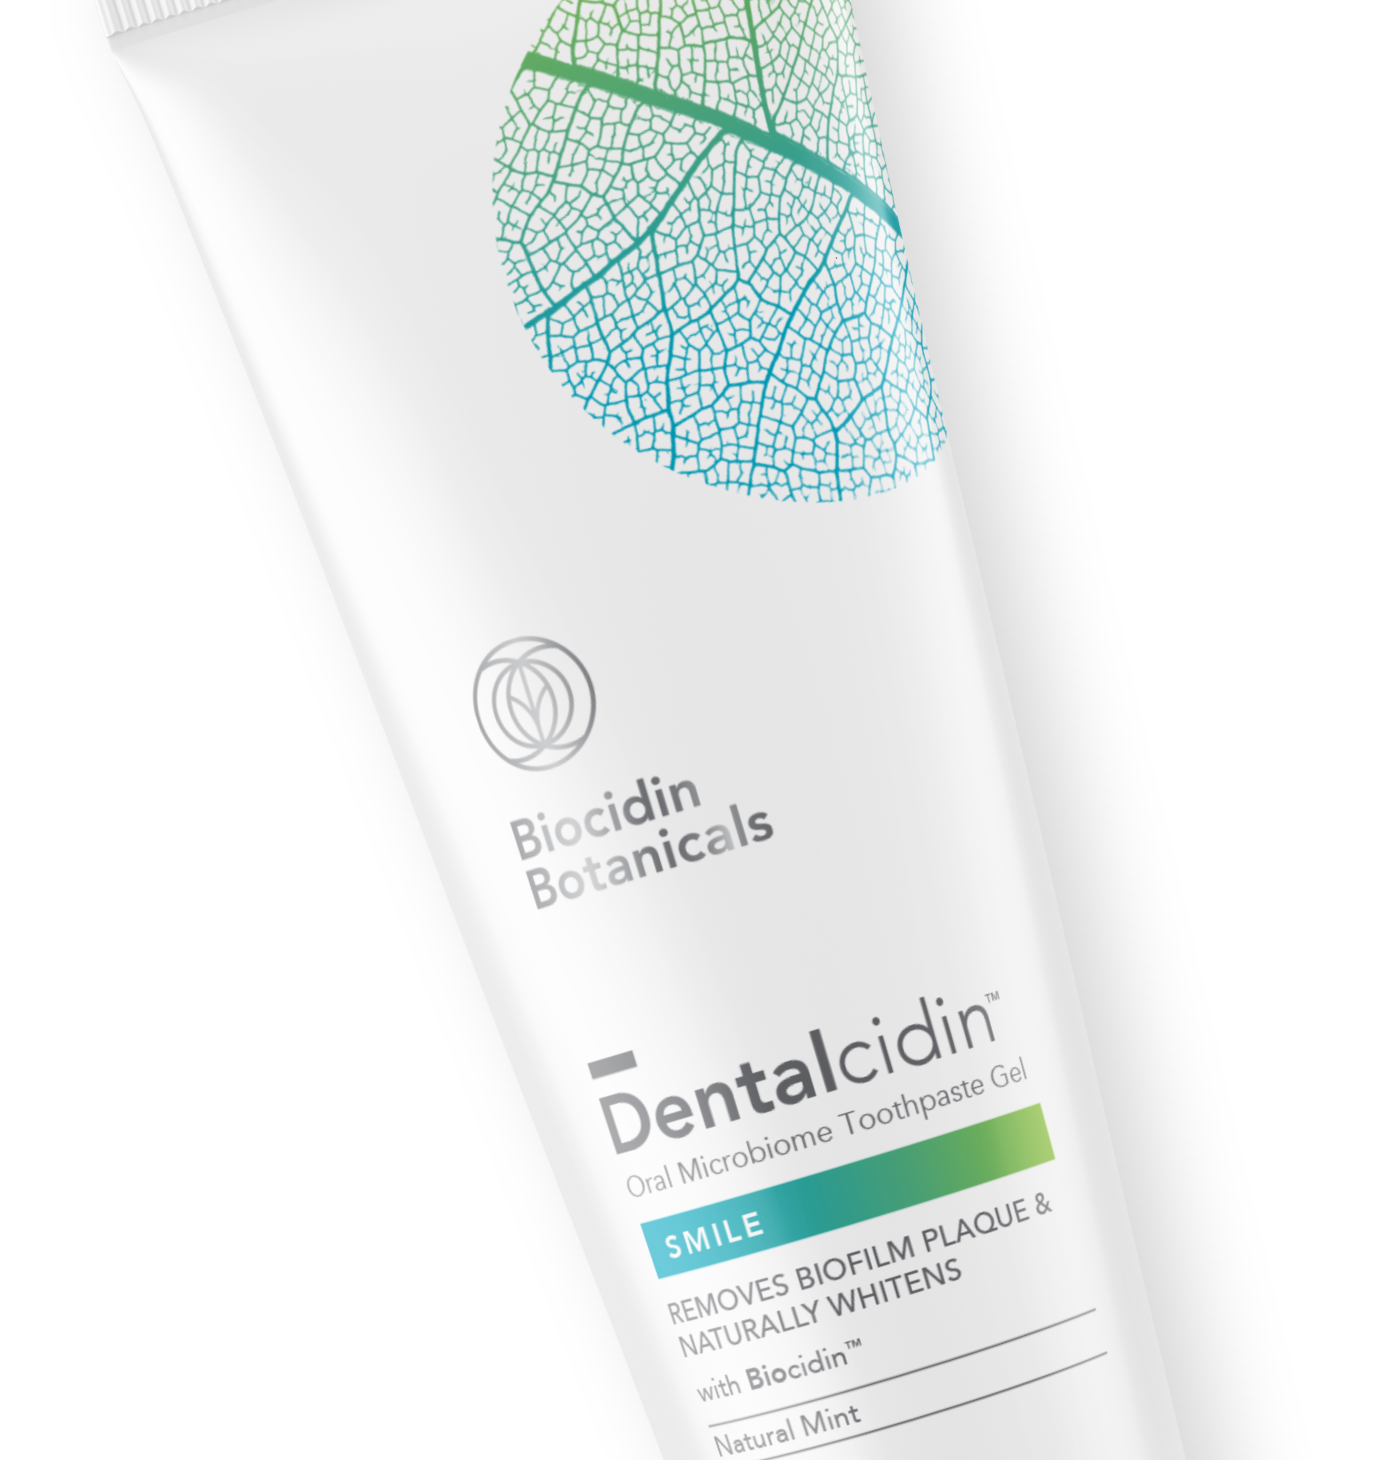 Biocidin_Botanicals_Dentalcidin_Packaging